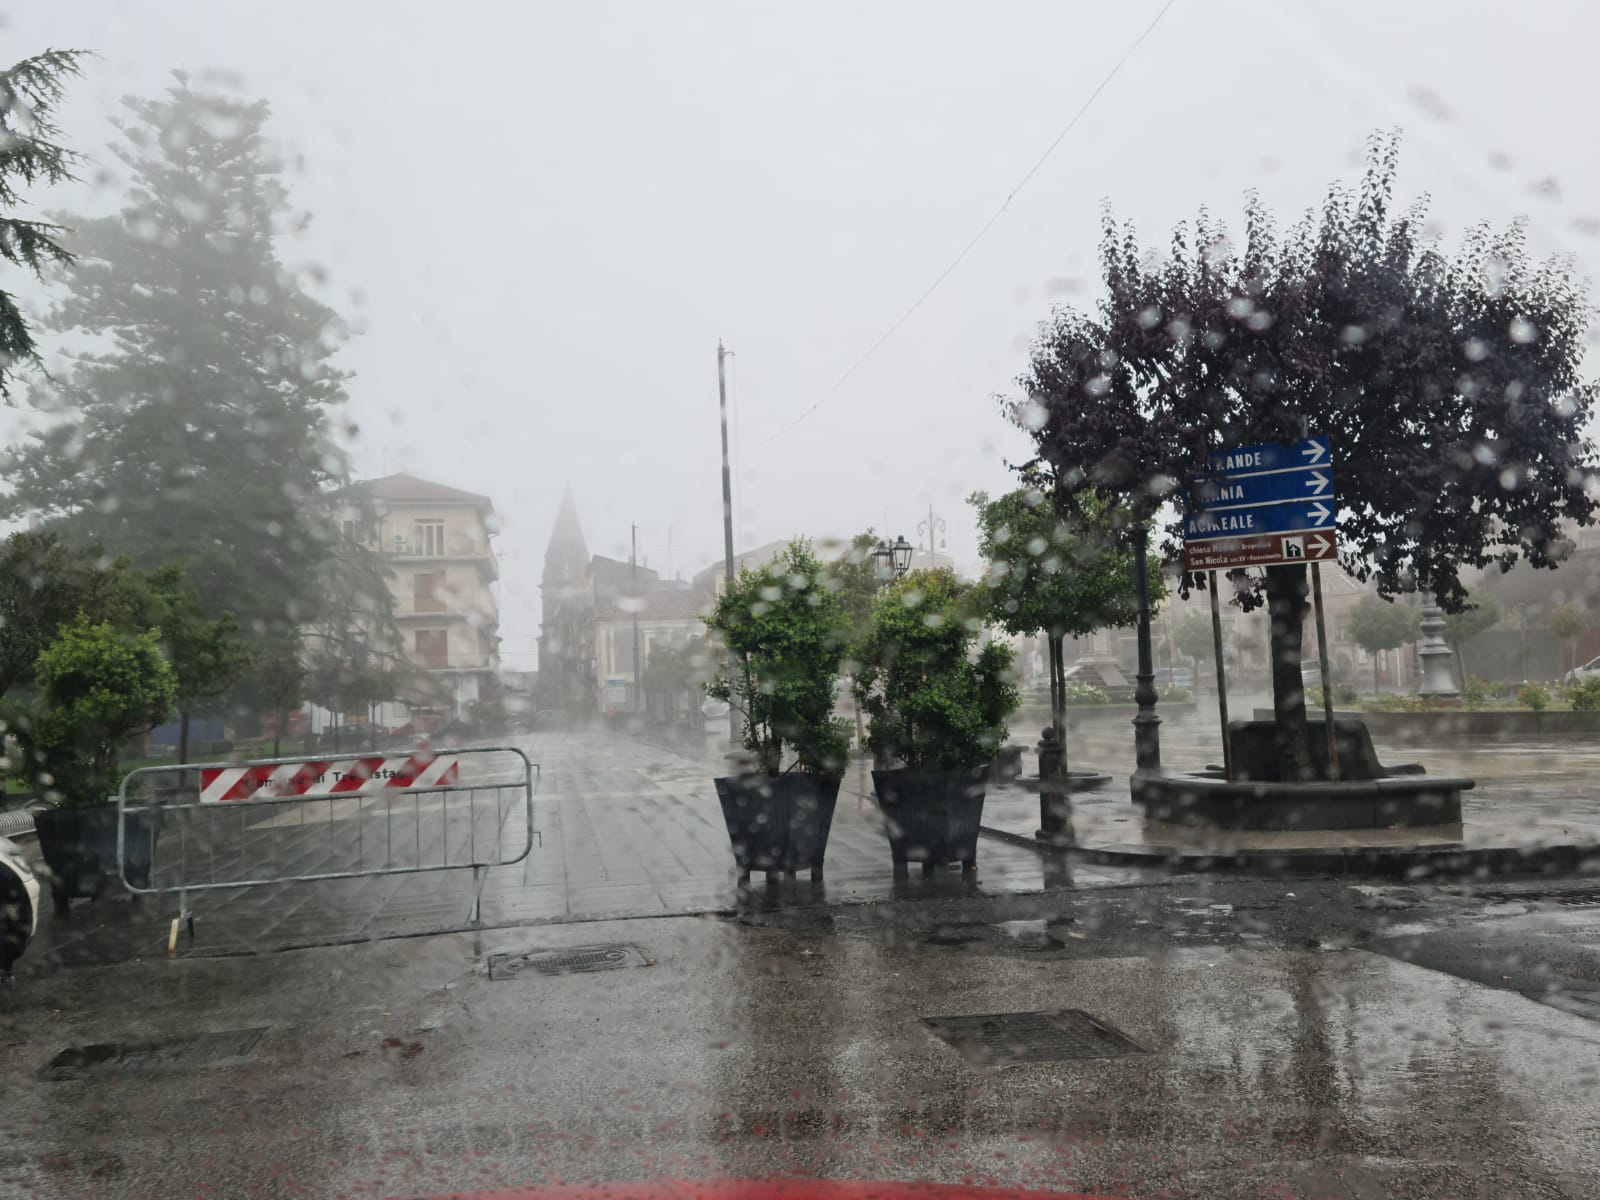 Pioggia, nebbia e strade allegate: disagi nel Catanese a causa del maltempo – FOTO e VIDEO